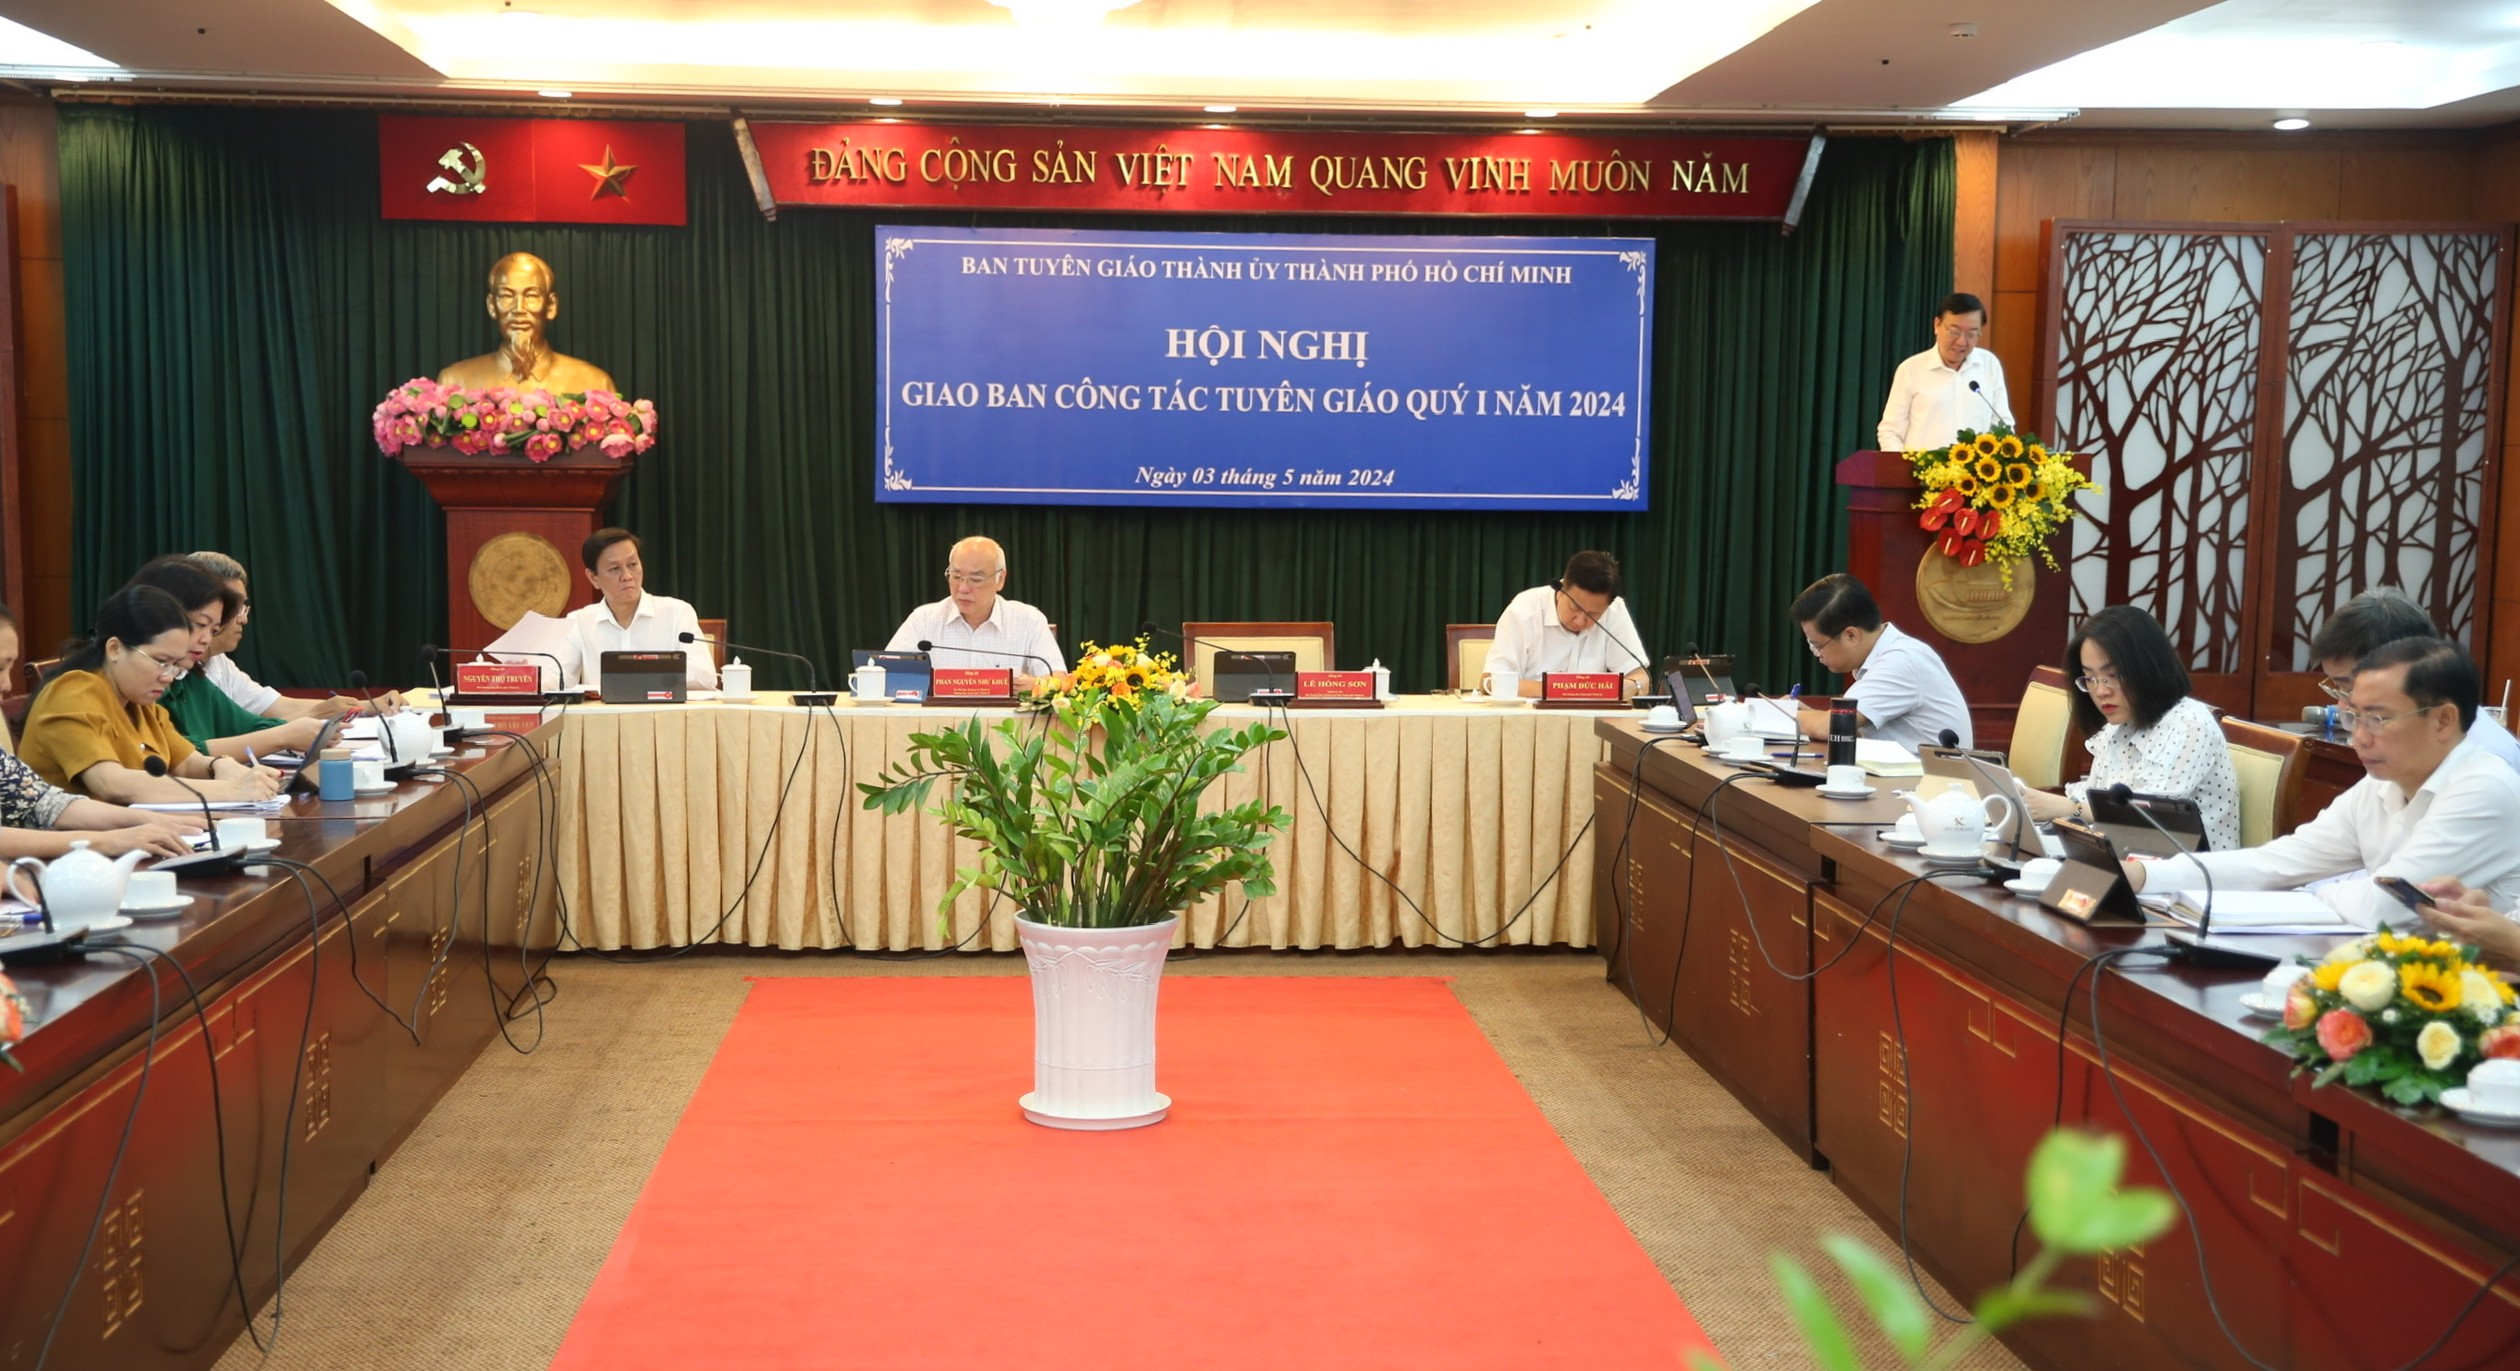 1-Hội nghị giao ban công tác tuyên giáo quý 1-2024 do Ban Tuyên giáo Thành ủy TP. Hồ Chí Minh tổ chức.